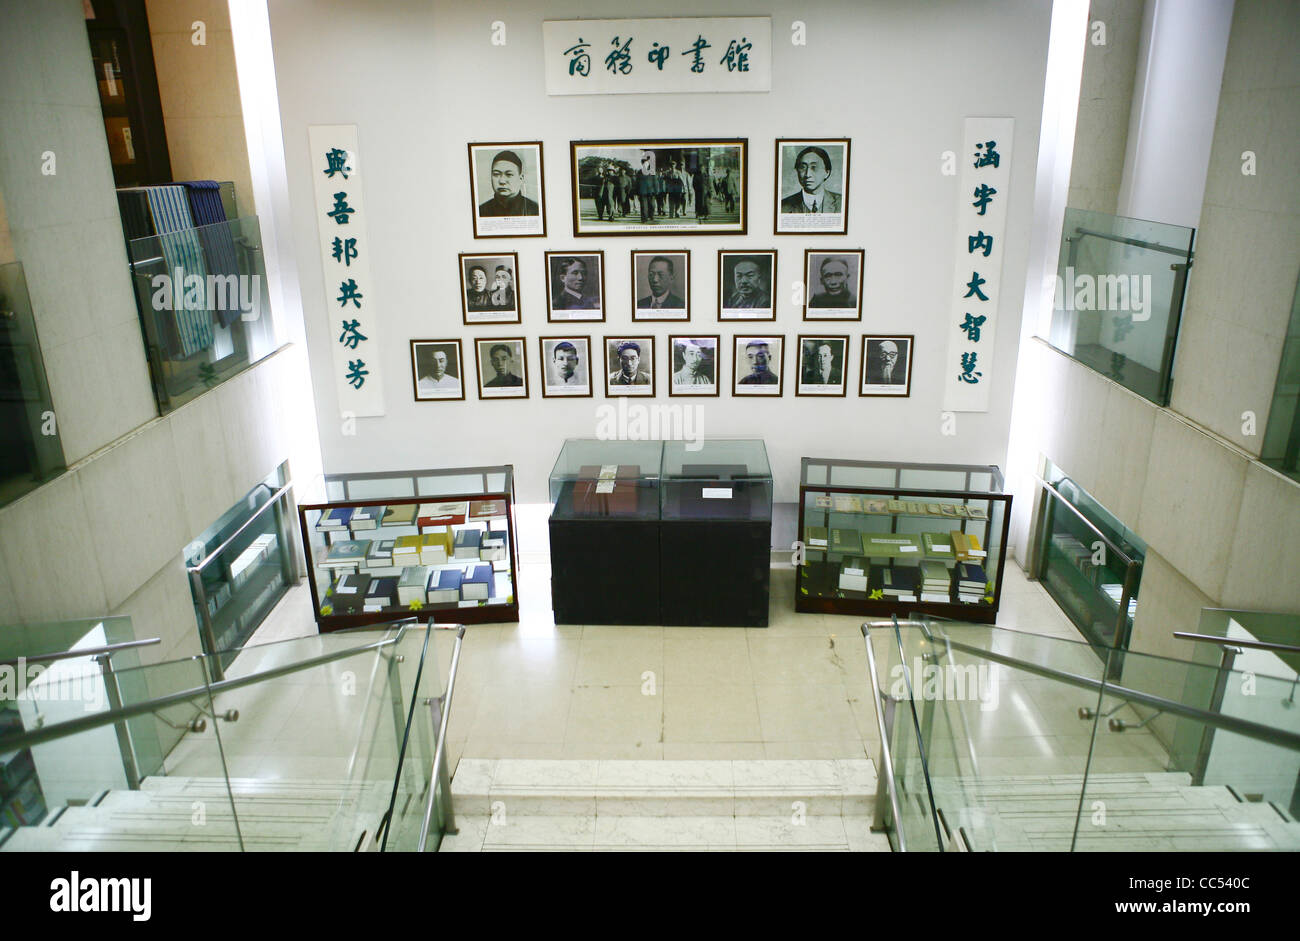 Publicaciones antiguas y persona famosa de las fotografías que aparecen en la prensa comercial, Pekín, China Foto de stock